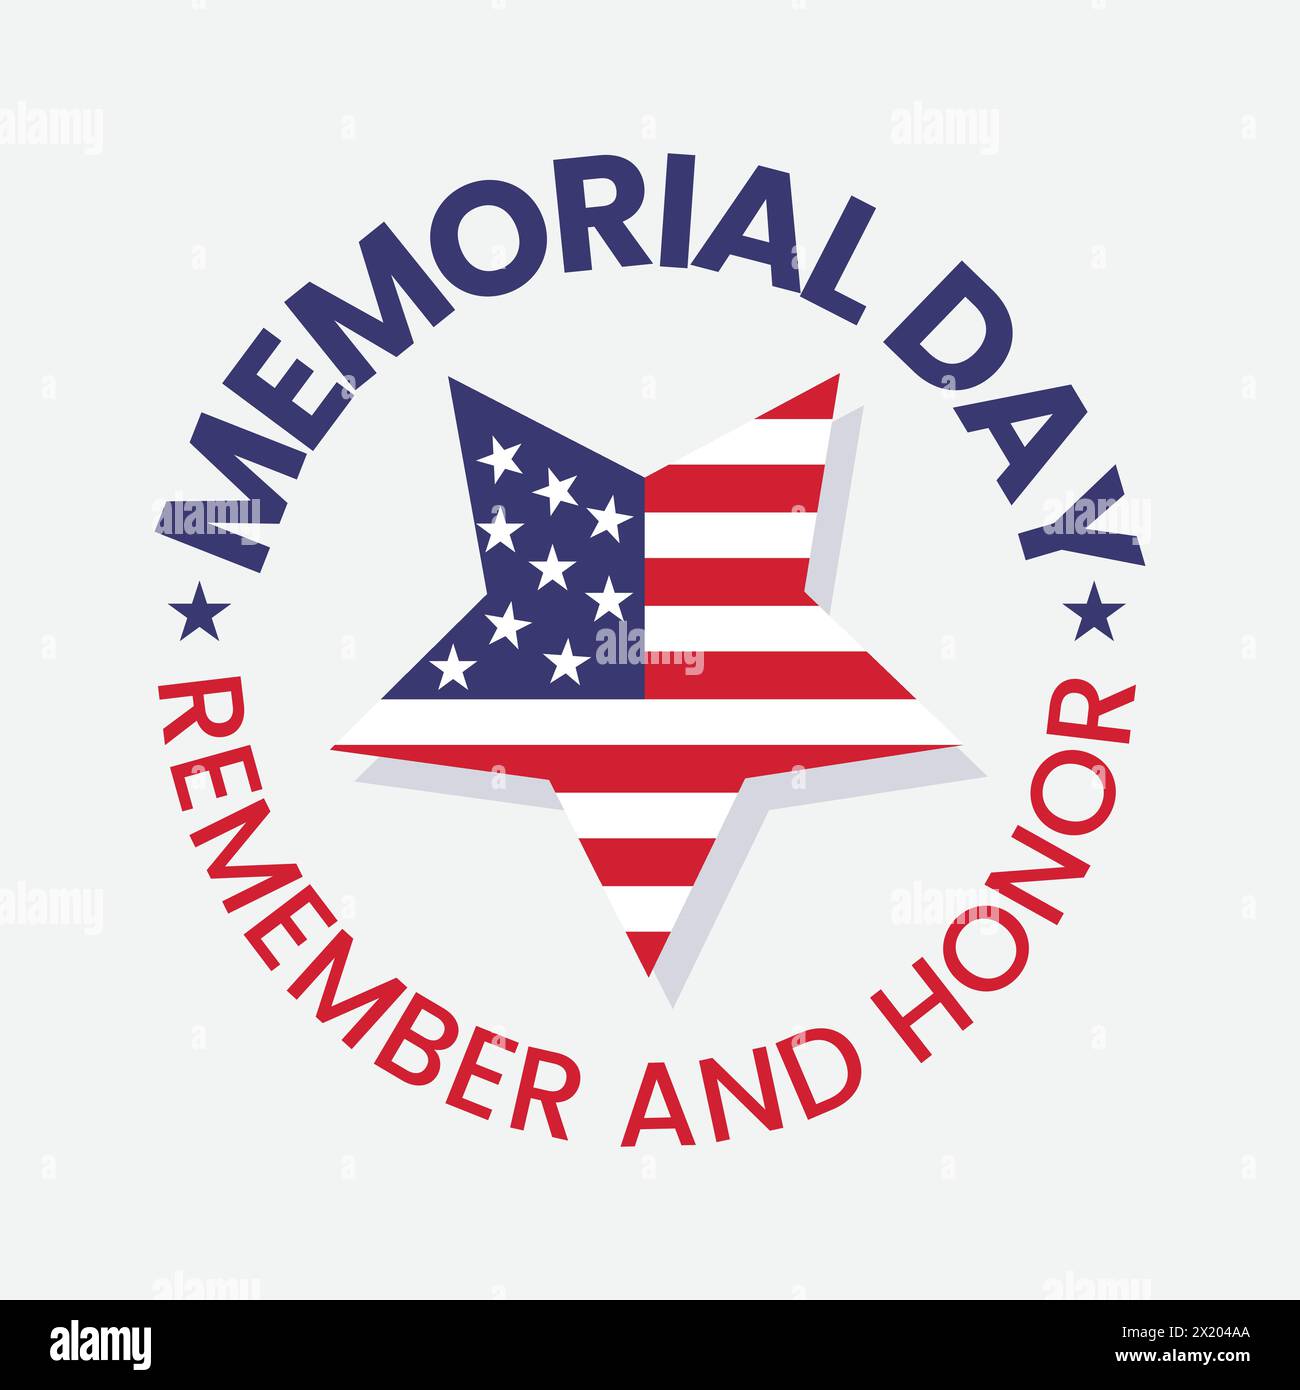 Memorial Day Emblem mit amerikanischer Flagge in Sternform. Denken Sie an das Logo. Gedenkfeiertag für den amerikanischen Unabhängigkeitstag. Rot und blau. Stock Vektor